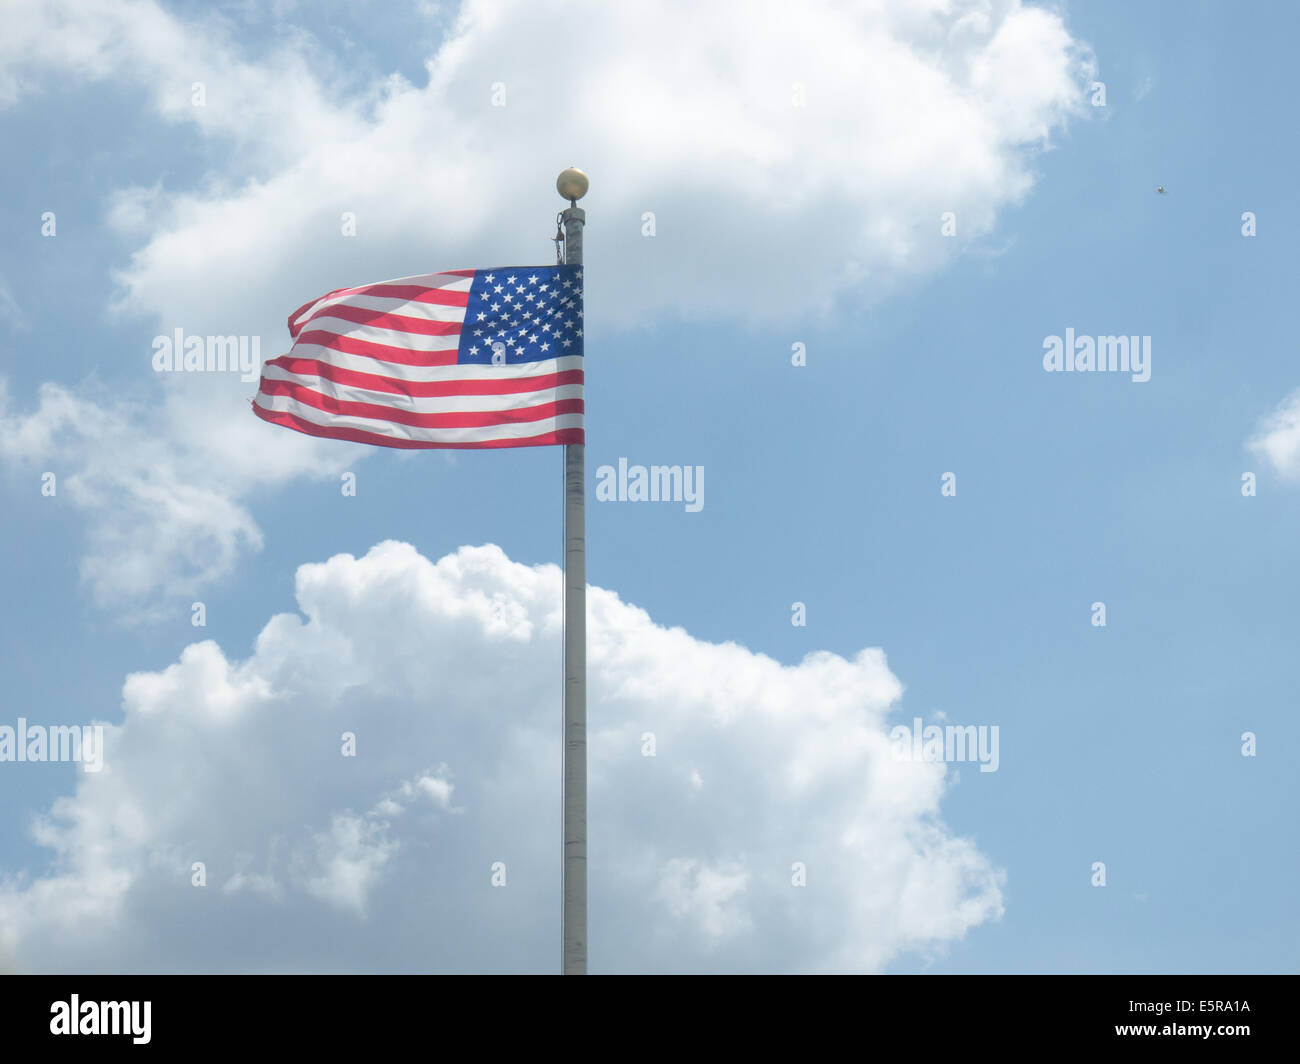 US flag against clear blue sky Stock Photo